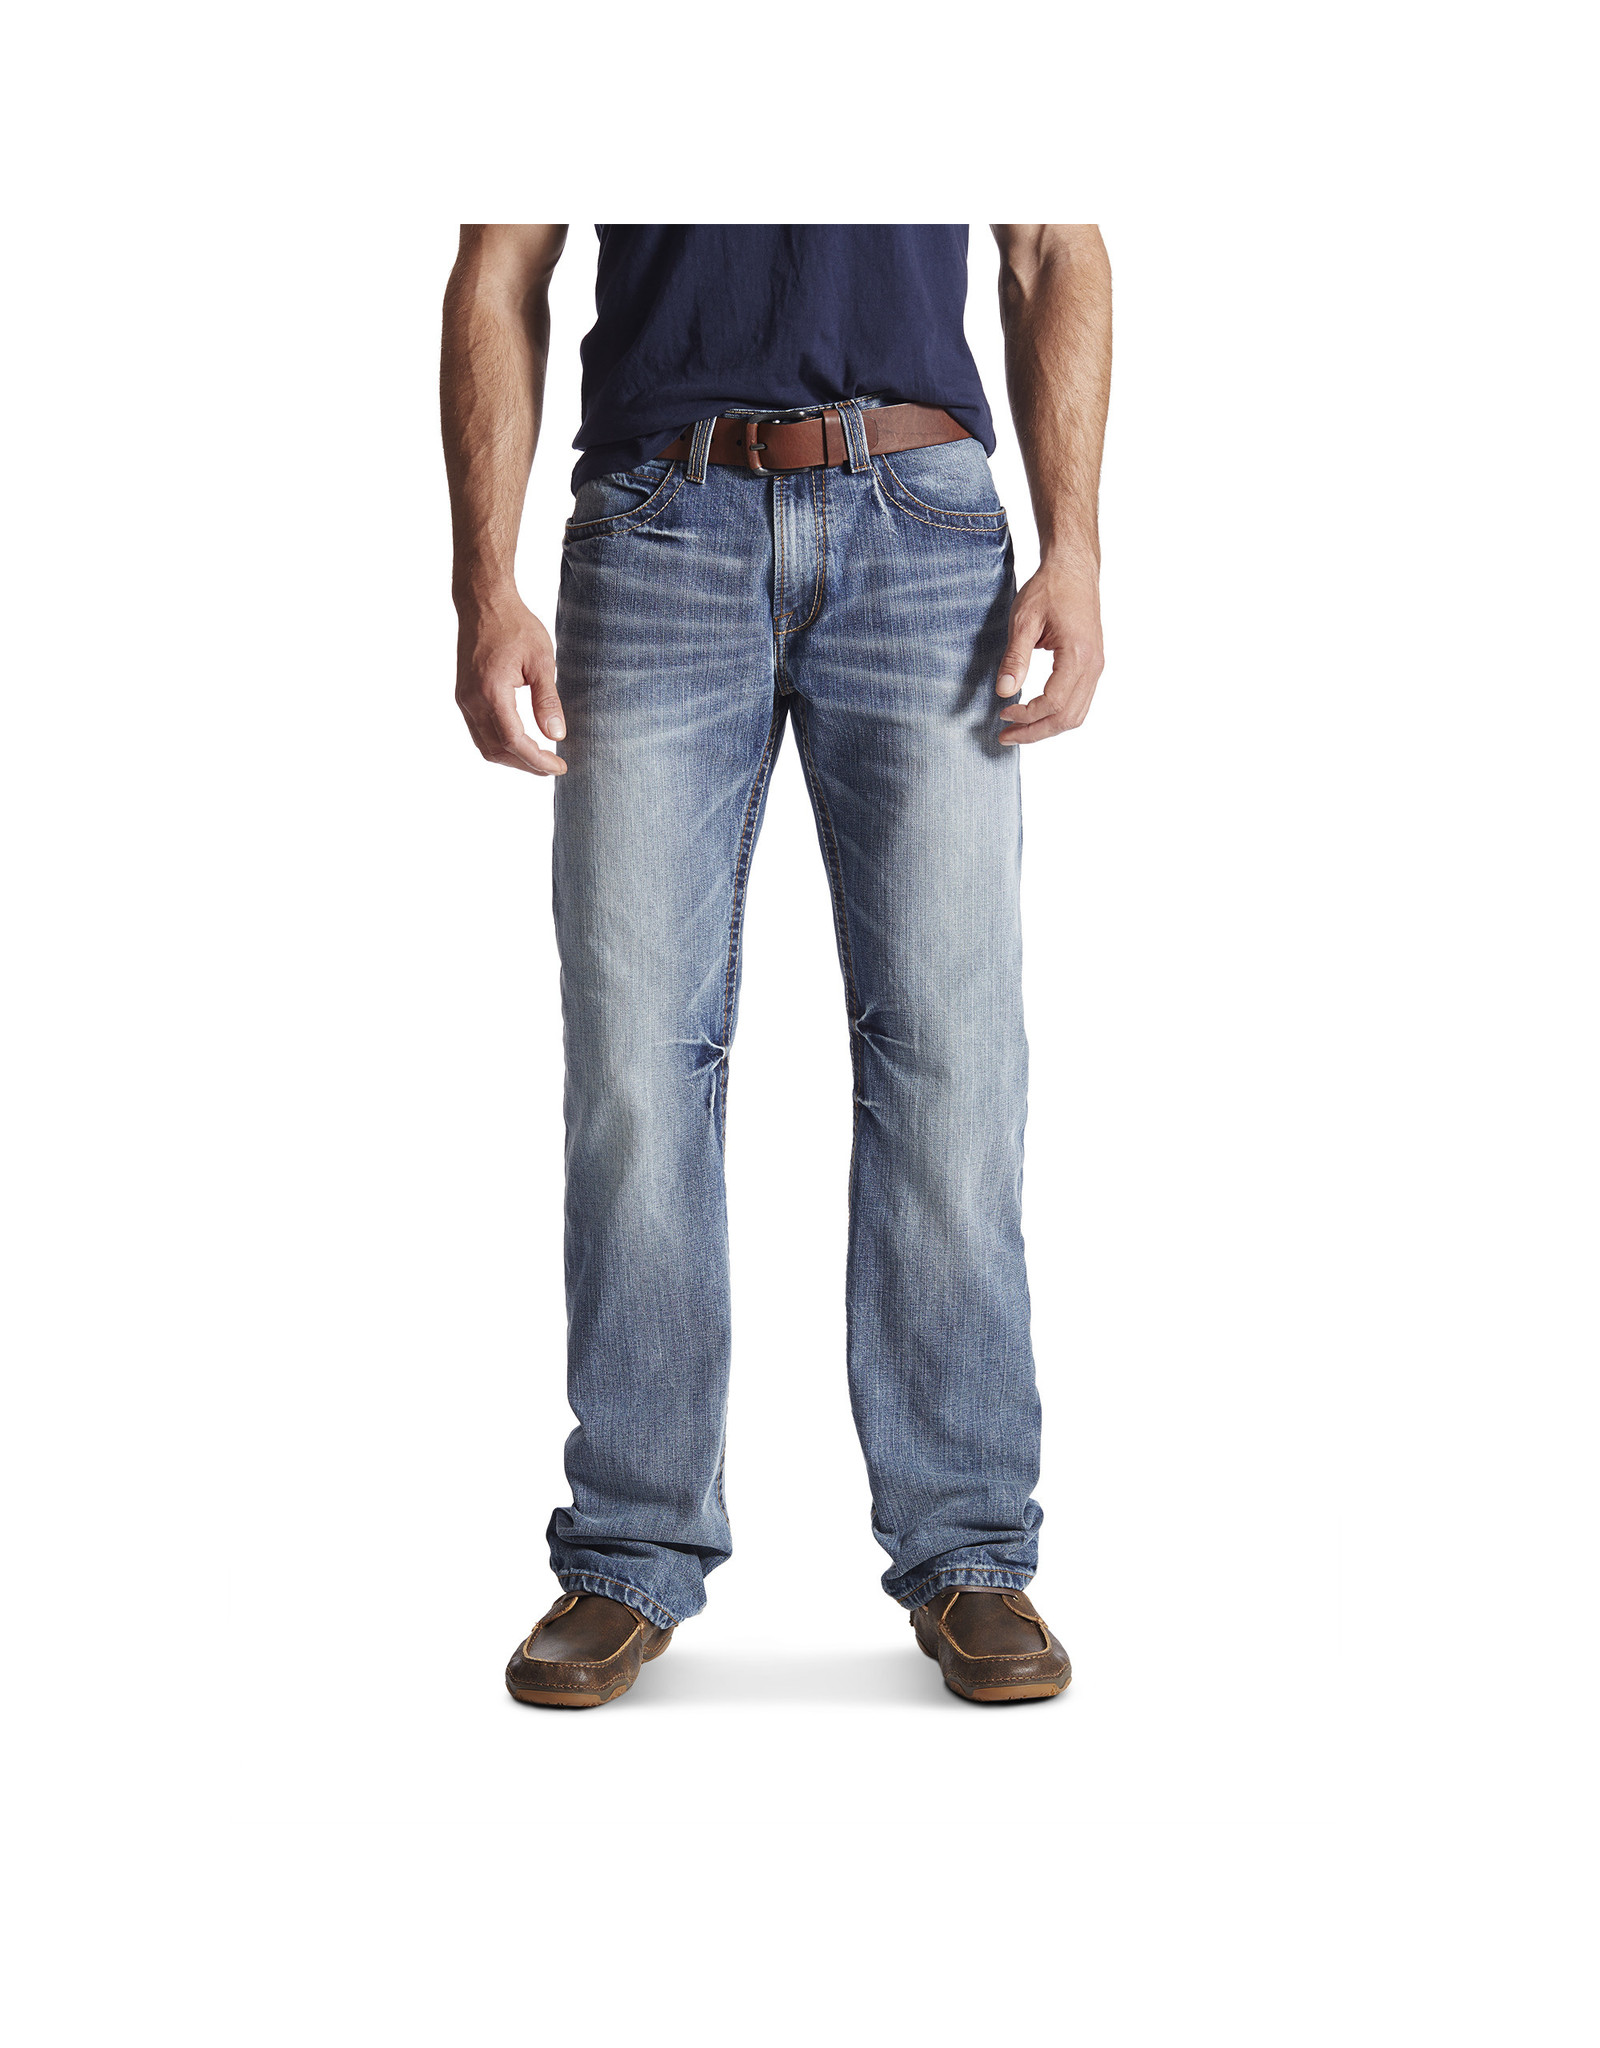 Ariat Mens Durango Jeans M4 10017511